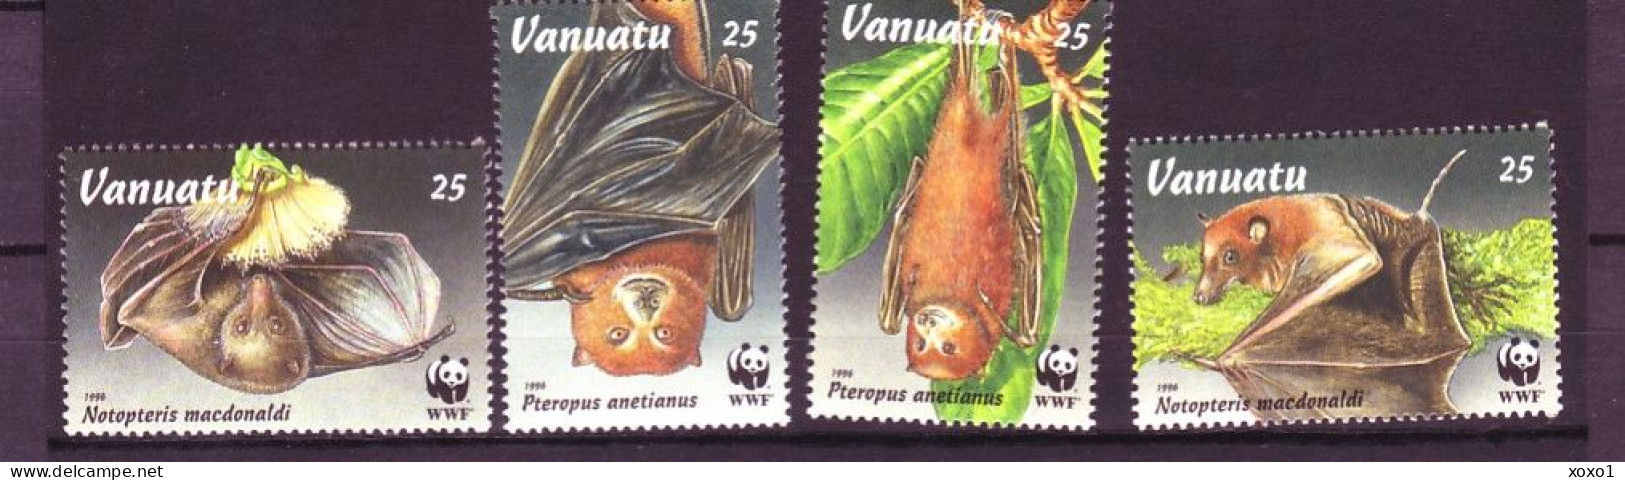 Vanuatu 1996 MiNr. 1004 - 1009 WWF Mammals Bats Insular Flying Fox, Fijian Blossom Bat  4v  MNH** 3.60 € - Ungebraucht